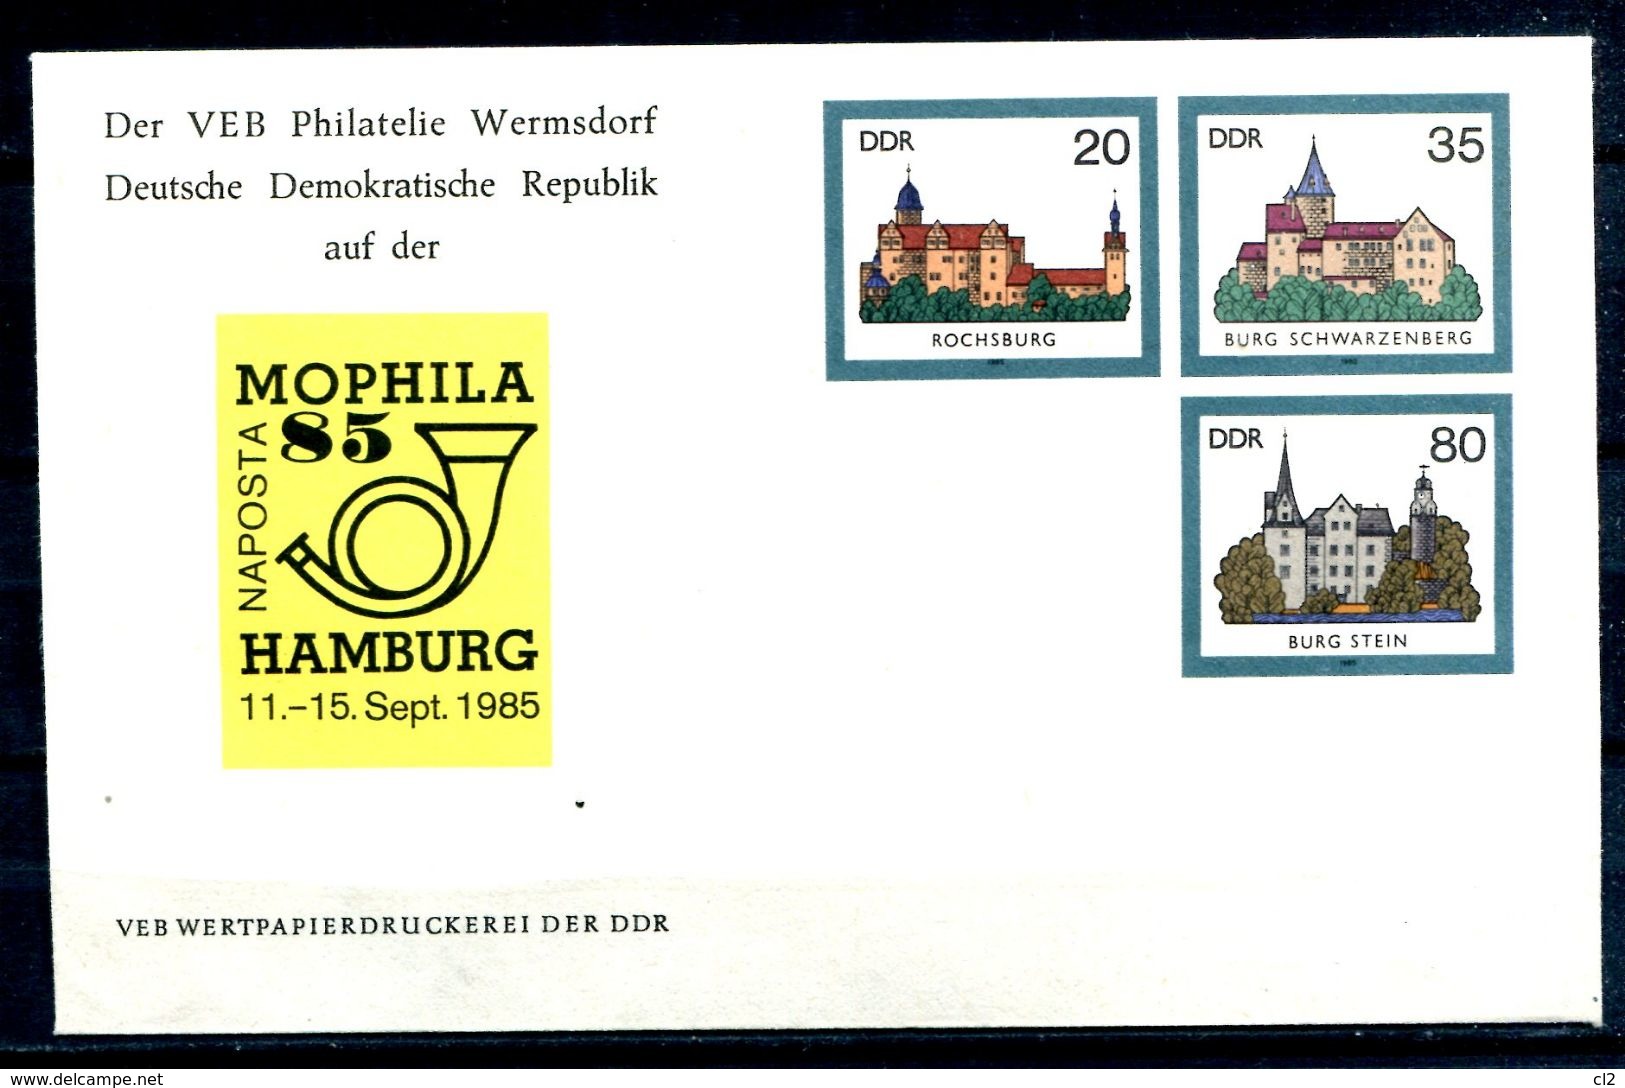 REPUBLIQUE DEMOCRATIQUE ALLEMANDE - Ganzsache Michel U2 Mit Privatzudruck (MOPHILA 85 HAMBURG) - Privé Briefomslagen - Ongebruikt